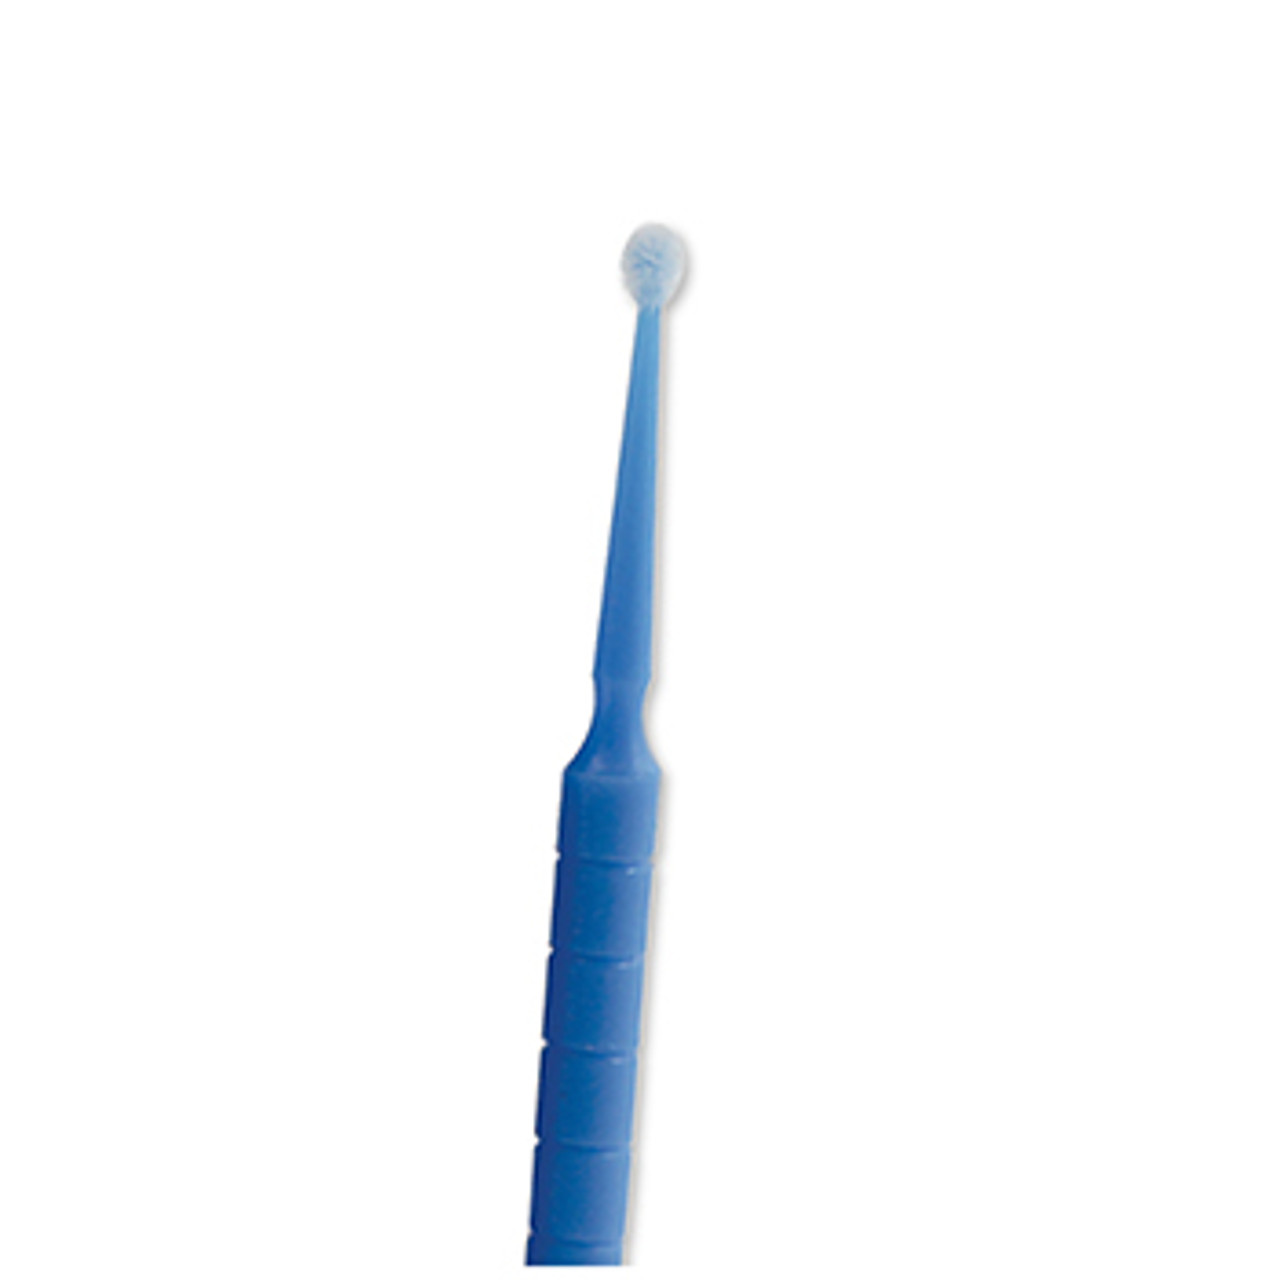 House Brand Regular Tip Micro Applicator Brushes - Blue. Pack of 400. 2.5mm  diameter. - The Dental Market U.S.